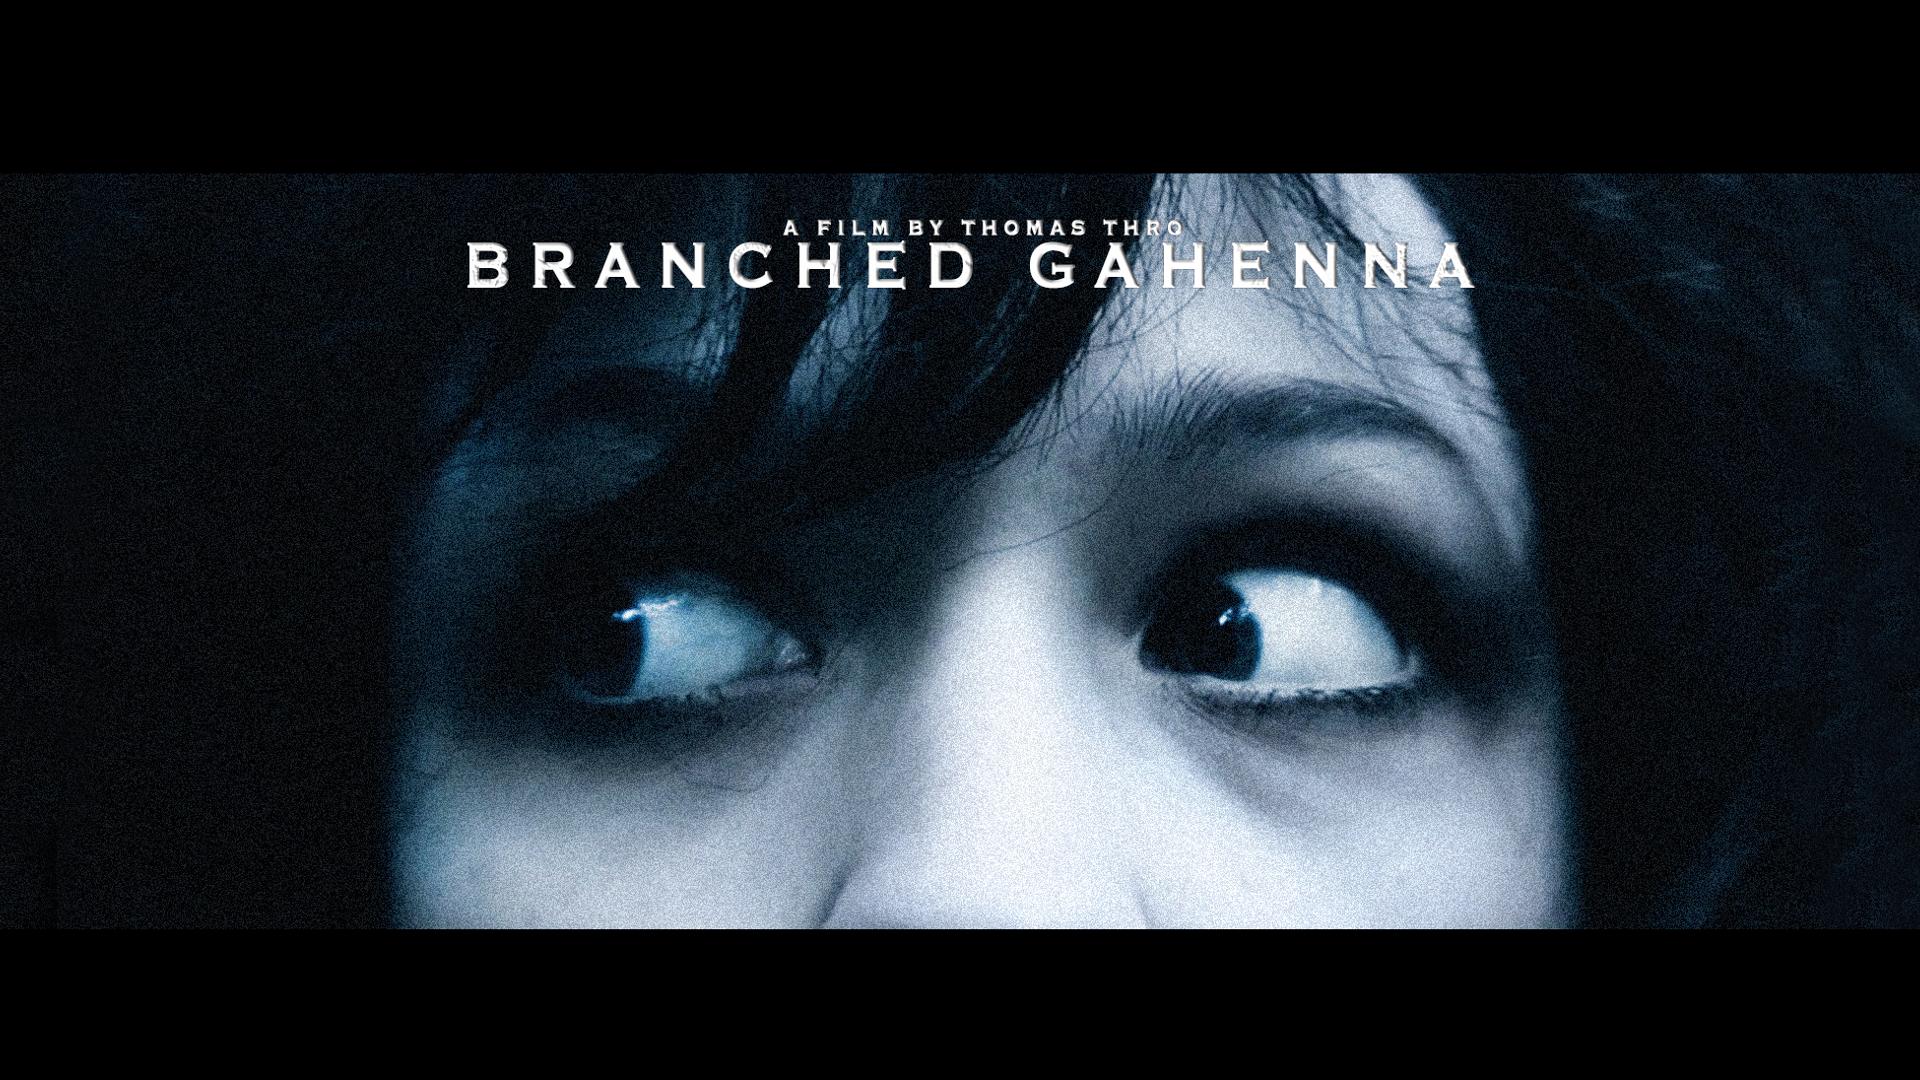 Branched Gahenna